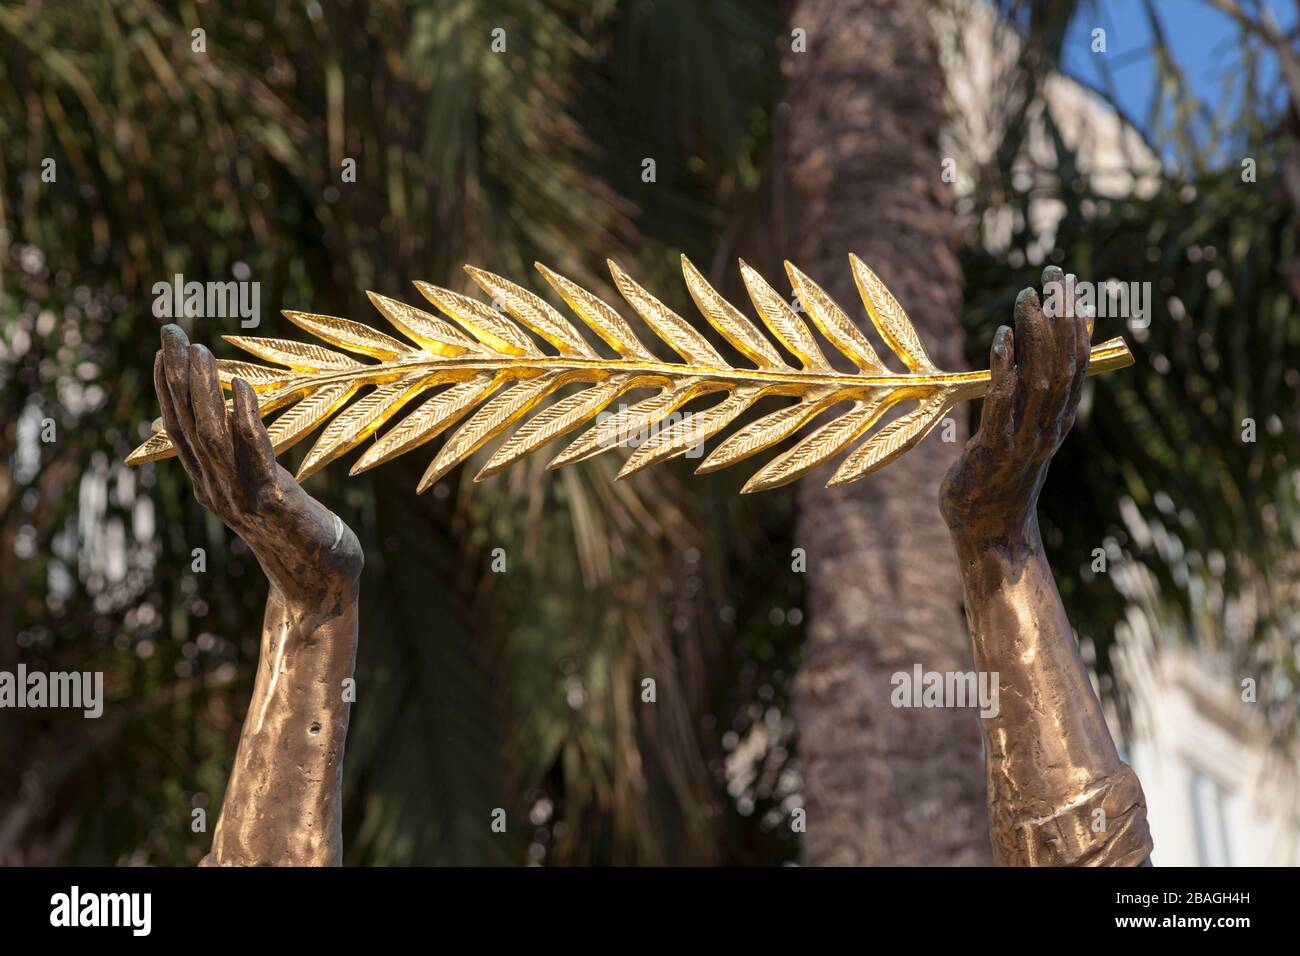 Gros plan sur la main d'une statue de bronze tenant une branche de palmiers dorés. Banque D'Images